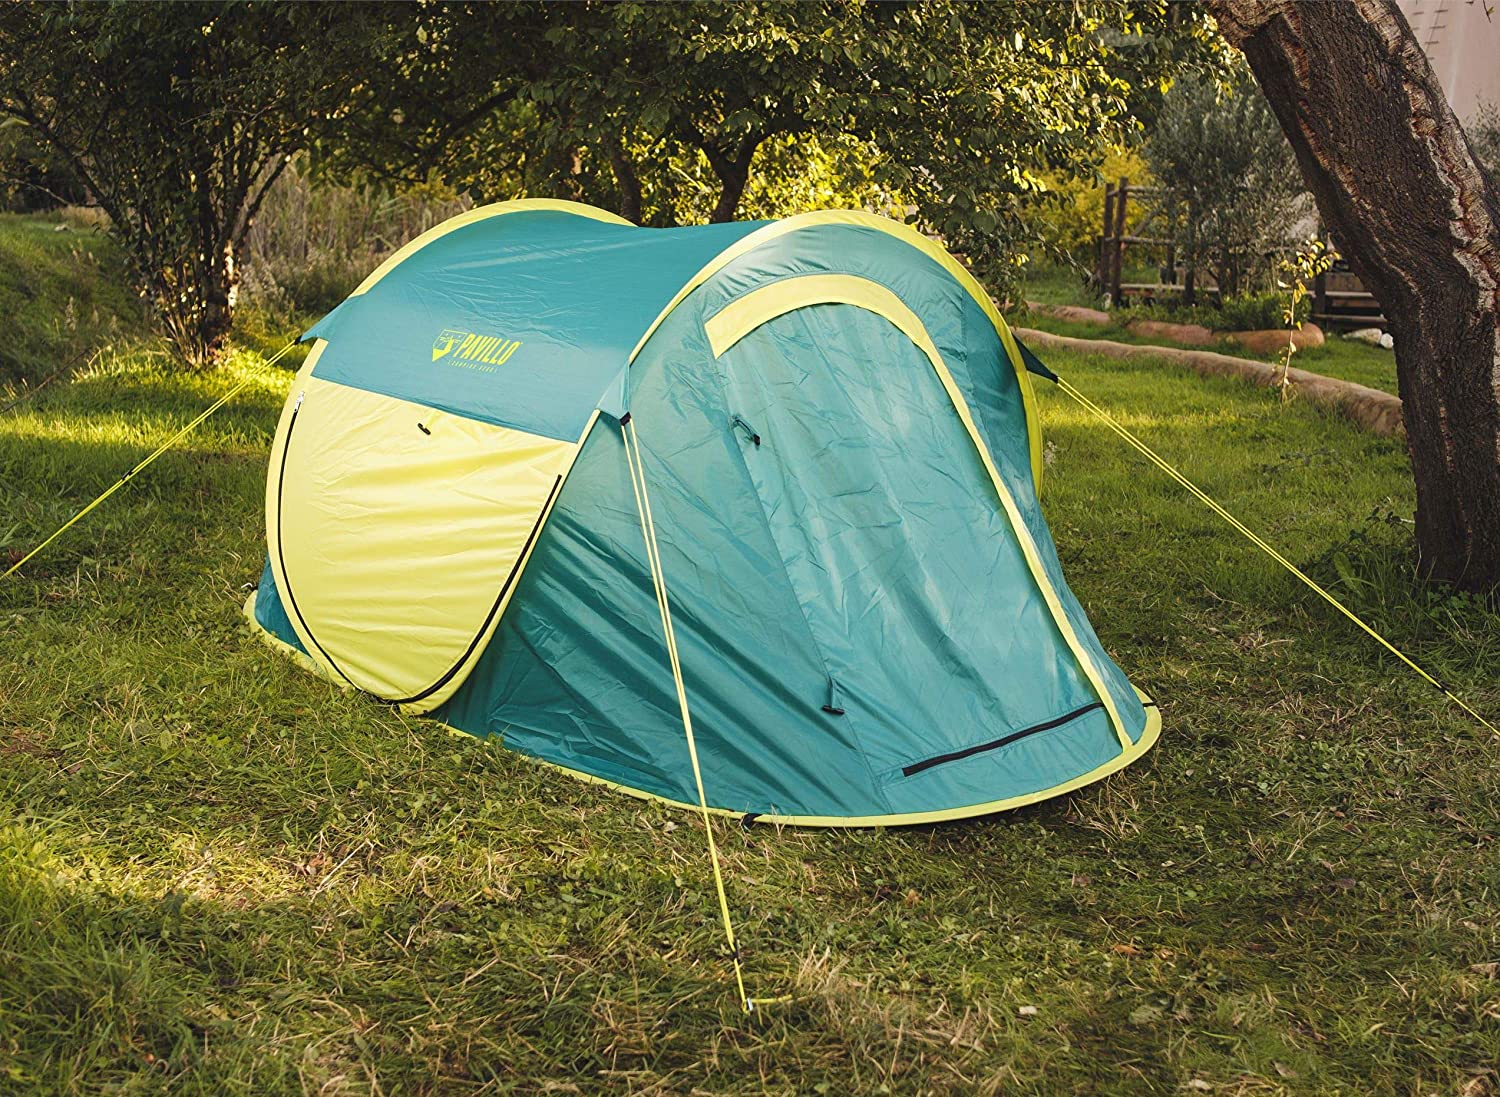 BestWay Pavillo CoolMount Tent 2P 2.35 م × 1.45 م × 1.5 م